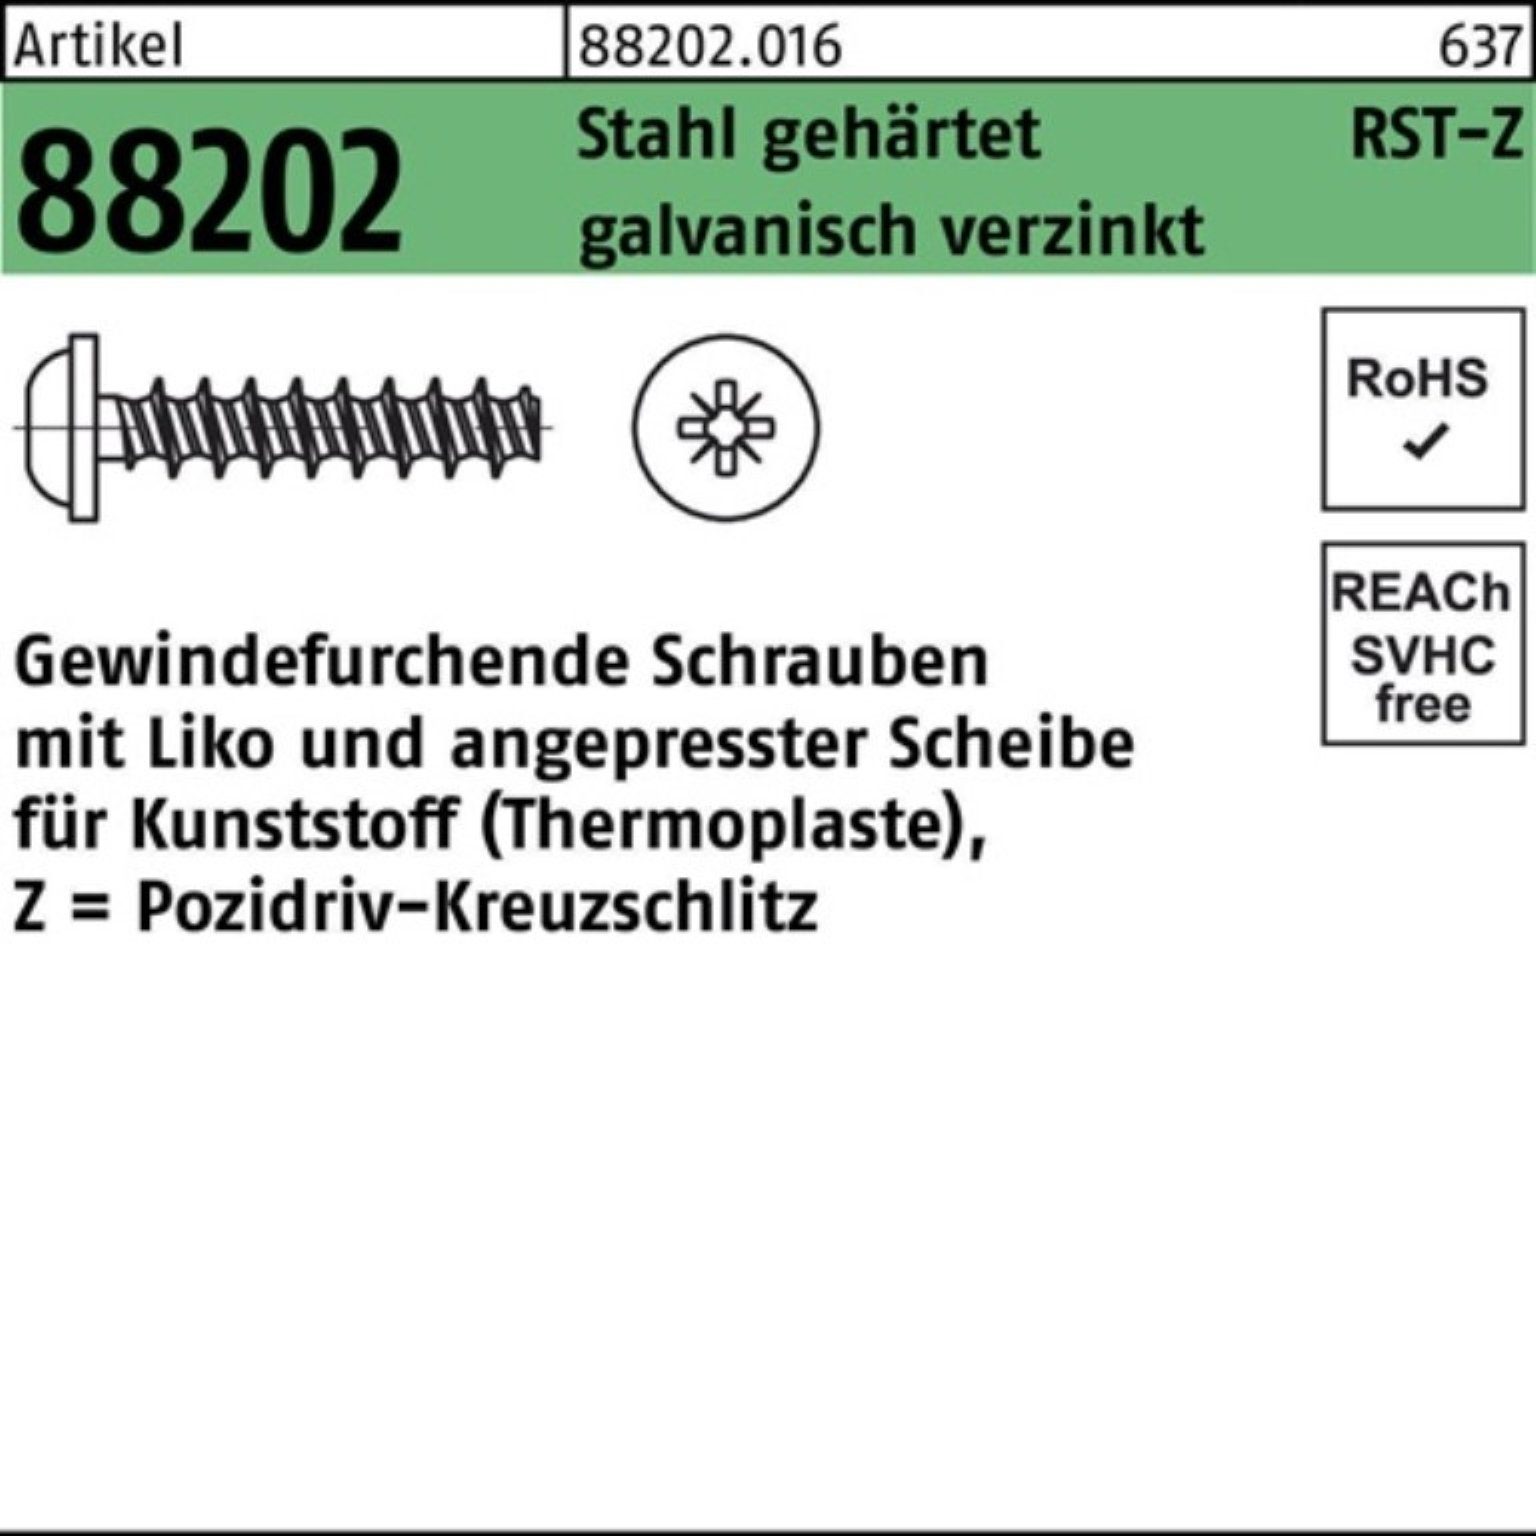 Reyher Gewindeschraube Pack 2,5x10-Z Liko PZ 88202 1000er ge Gewindefurchendeschraube R Stahl